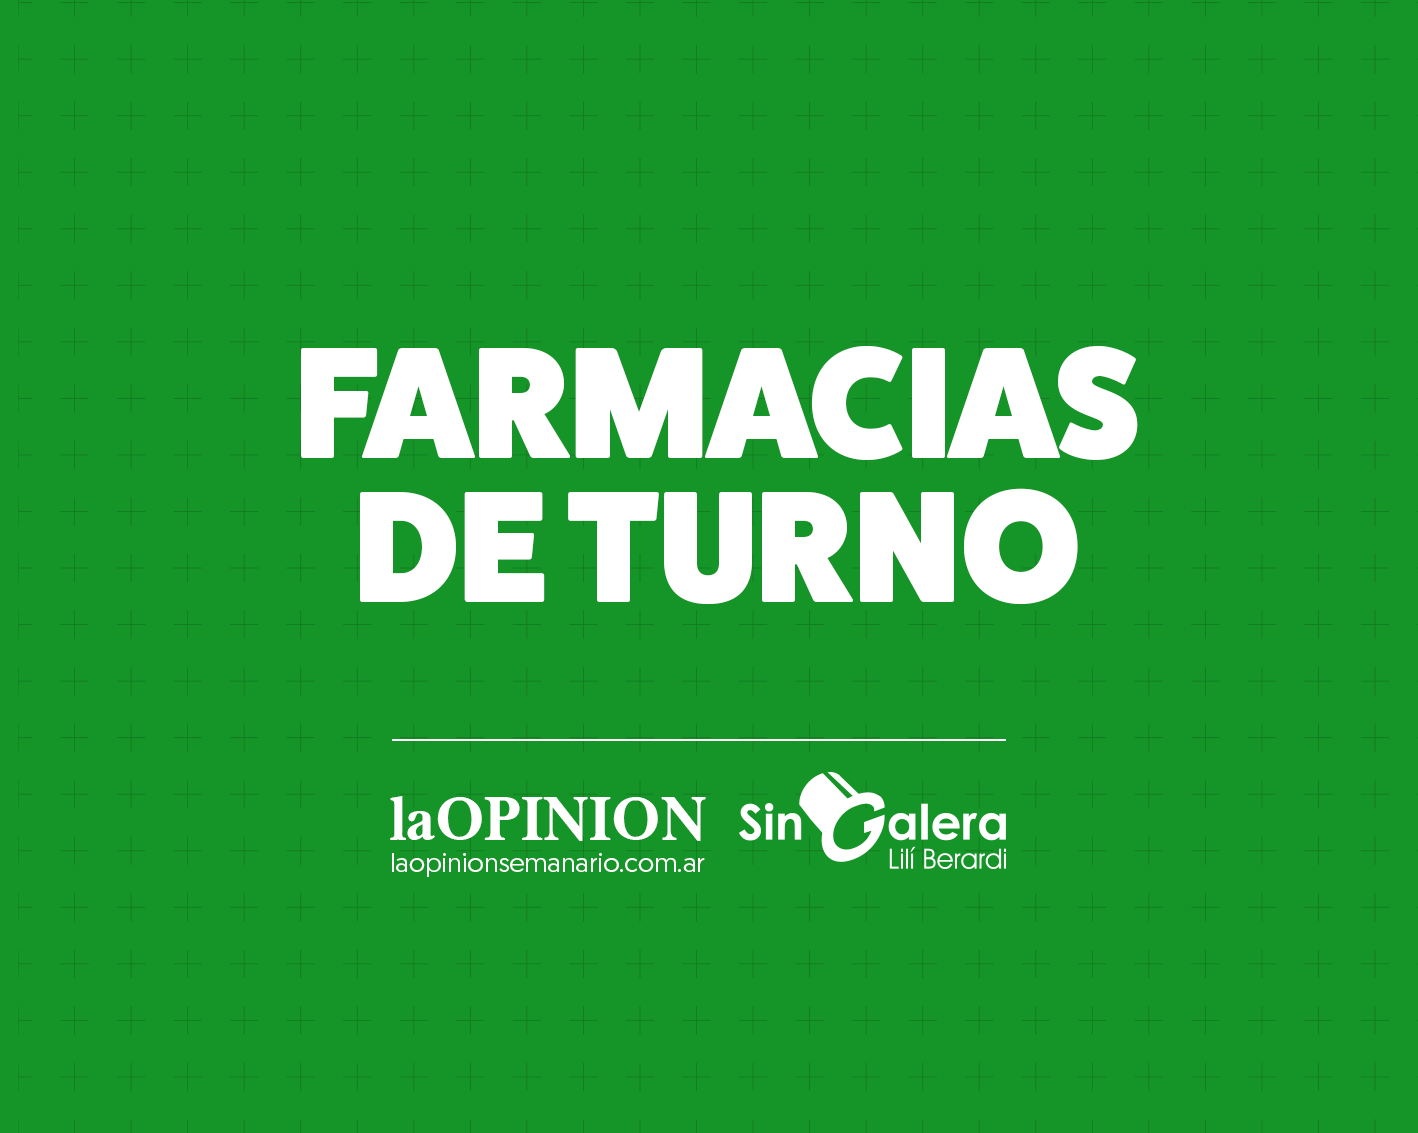 Farmacias de turno 11/2: Gustavo Molina, Select y Lavagnino